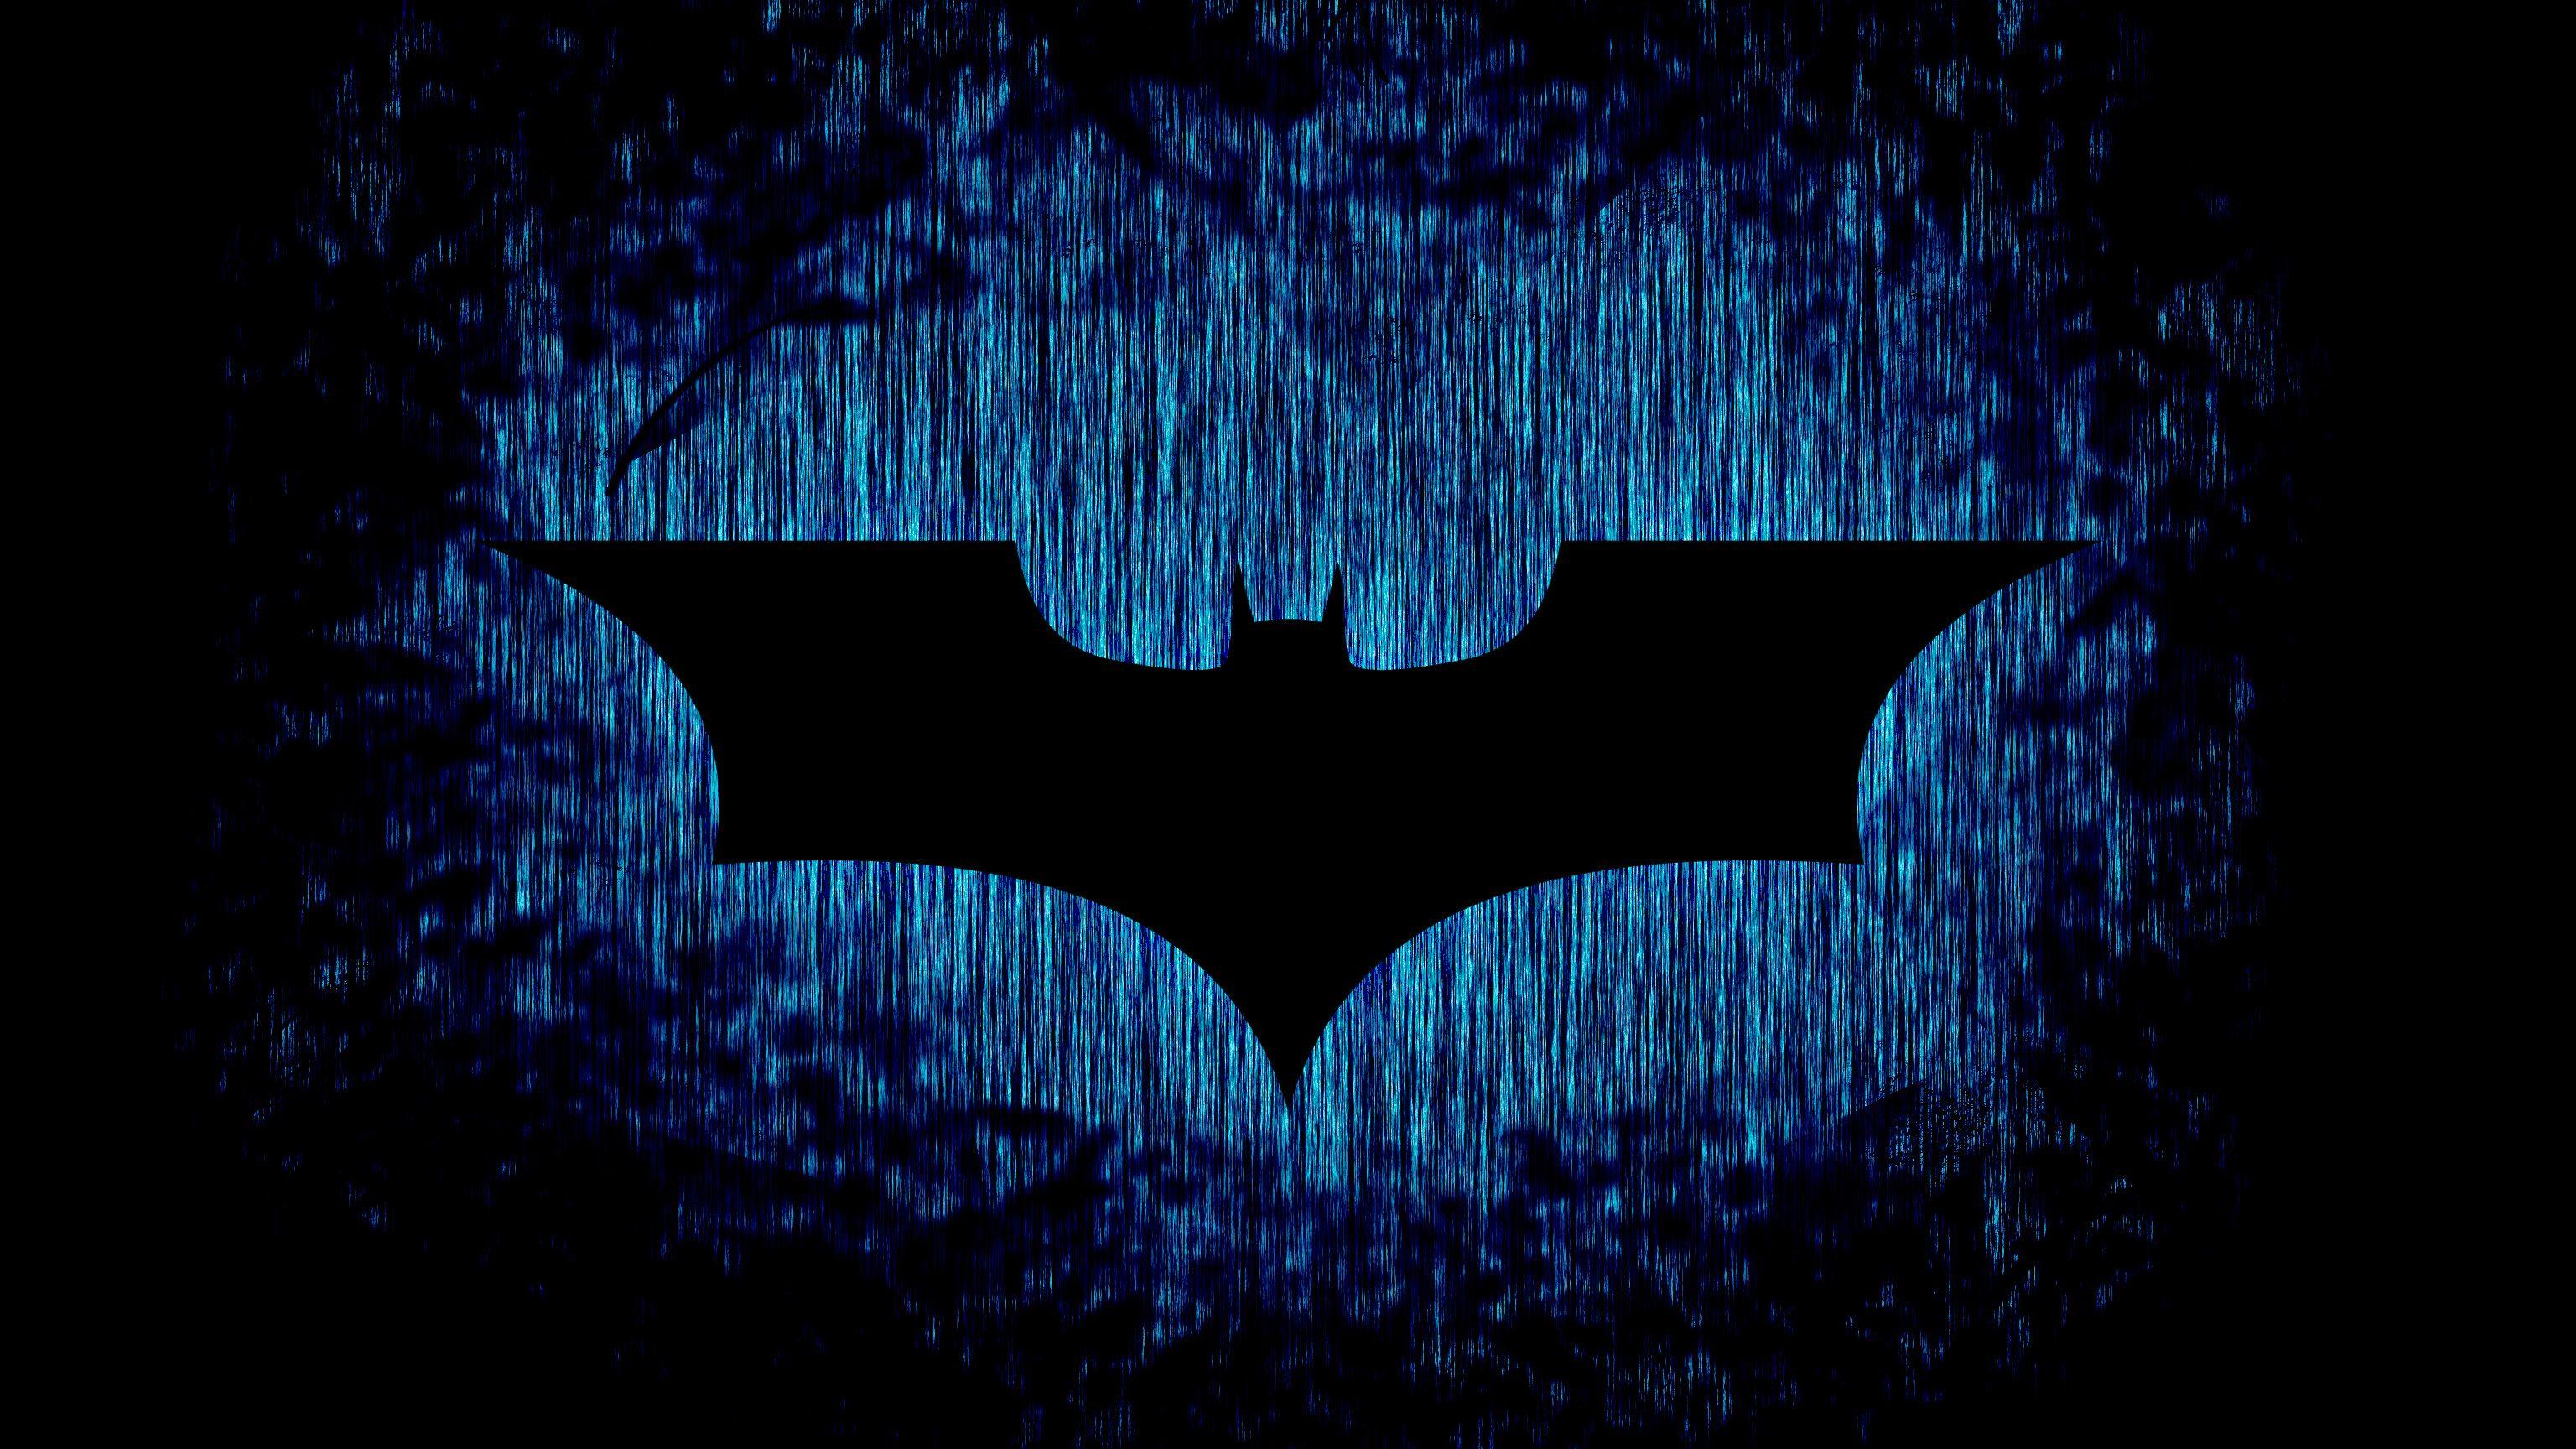 Dark knight confident art batman 1080x2160 wallpaper  Batman pictures  Superhero batman Batman comic art